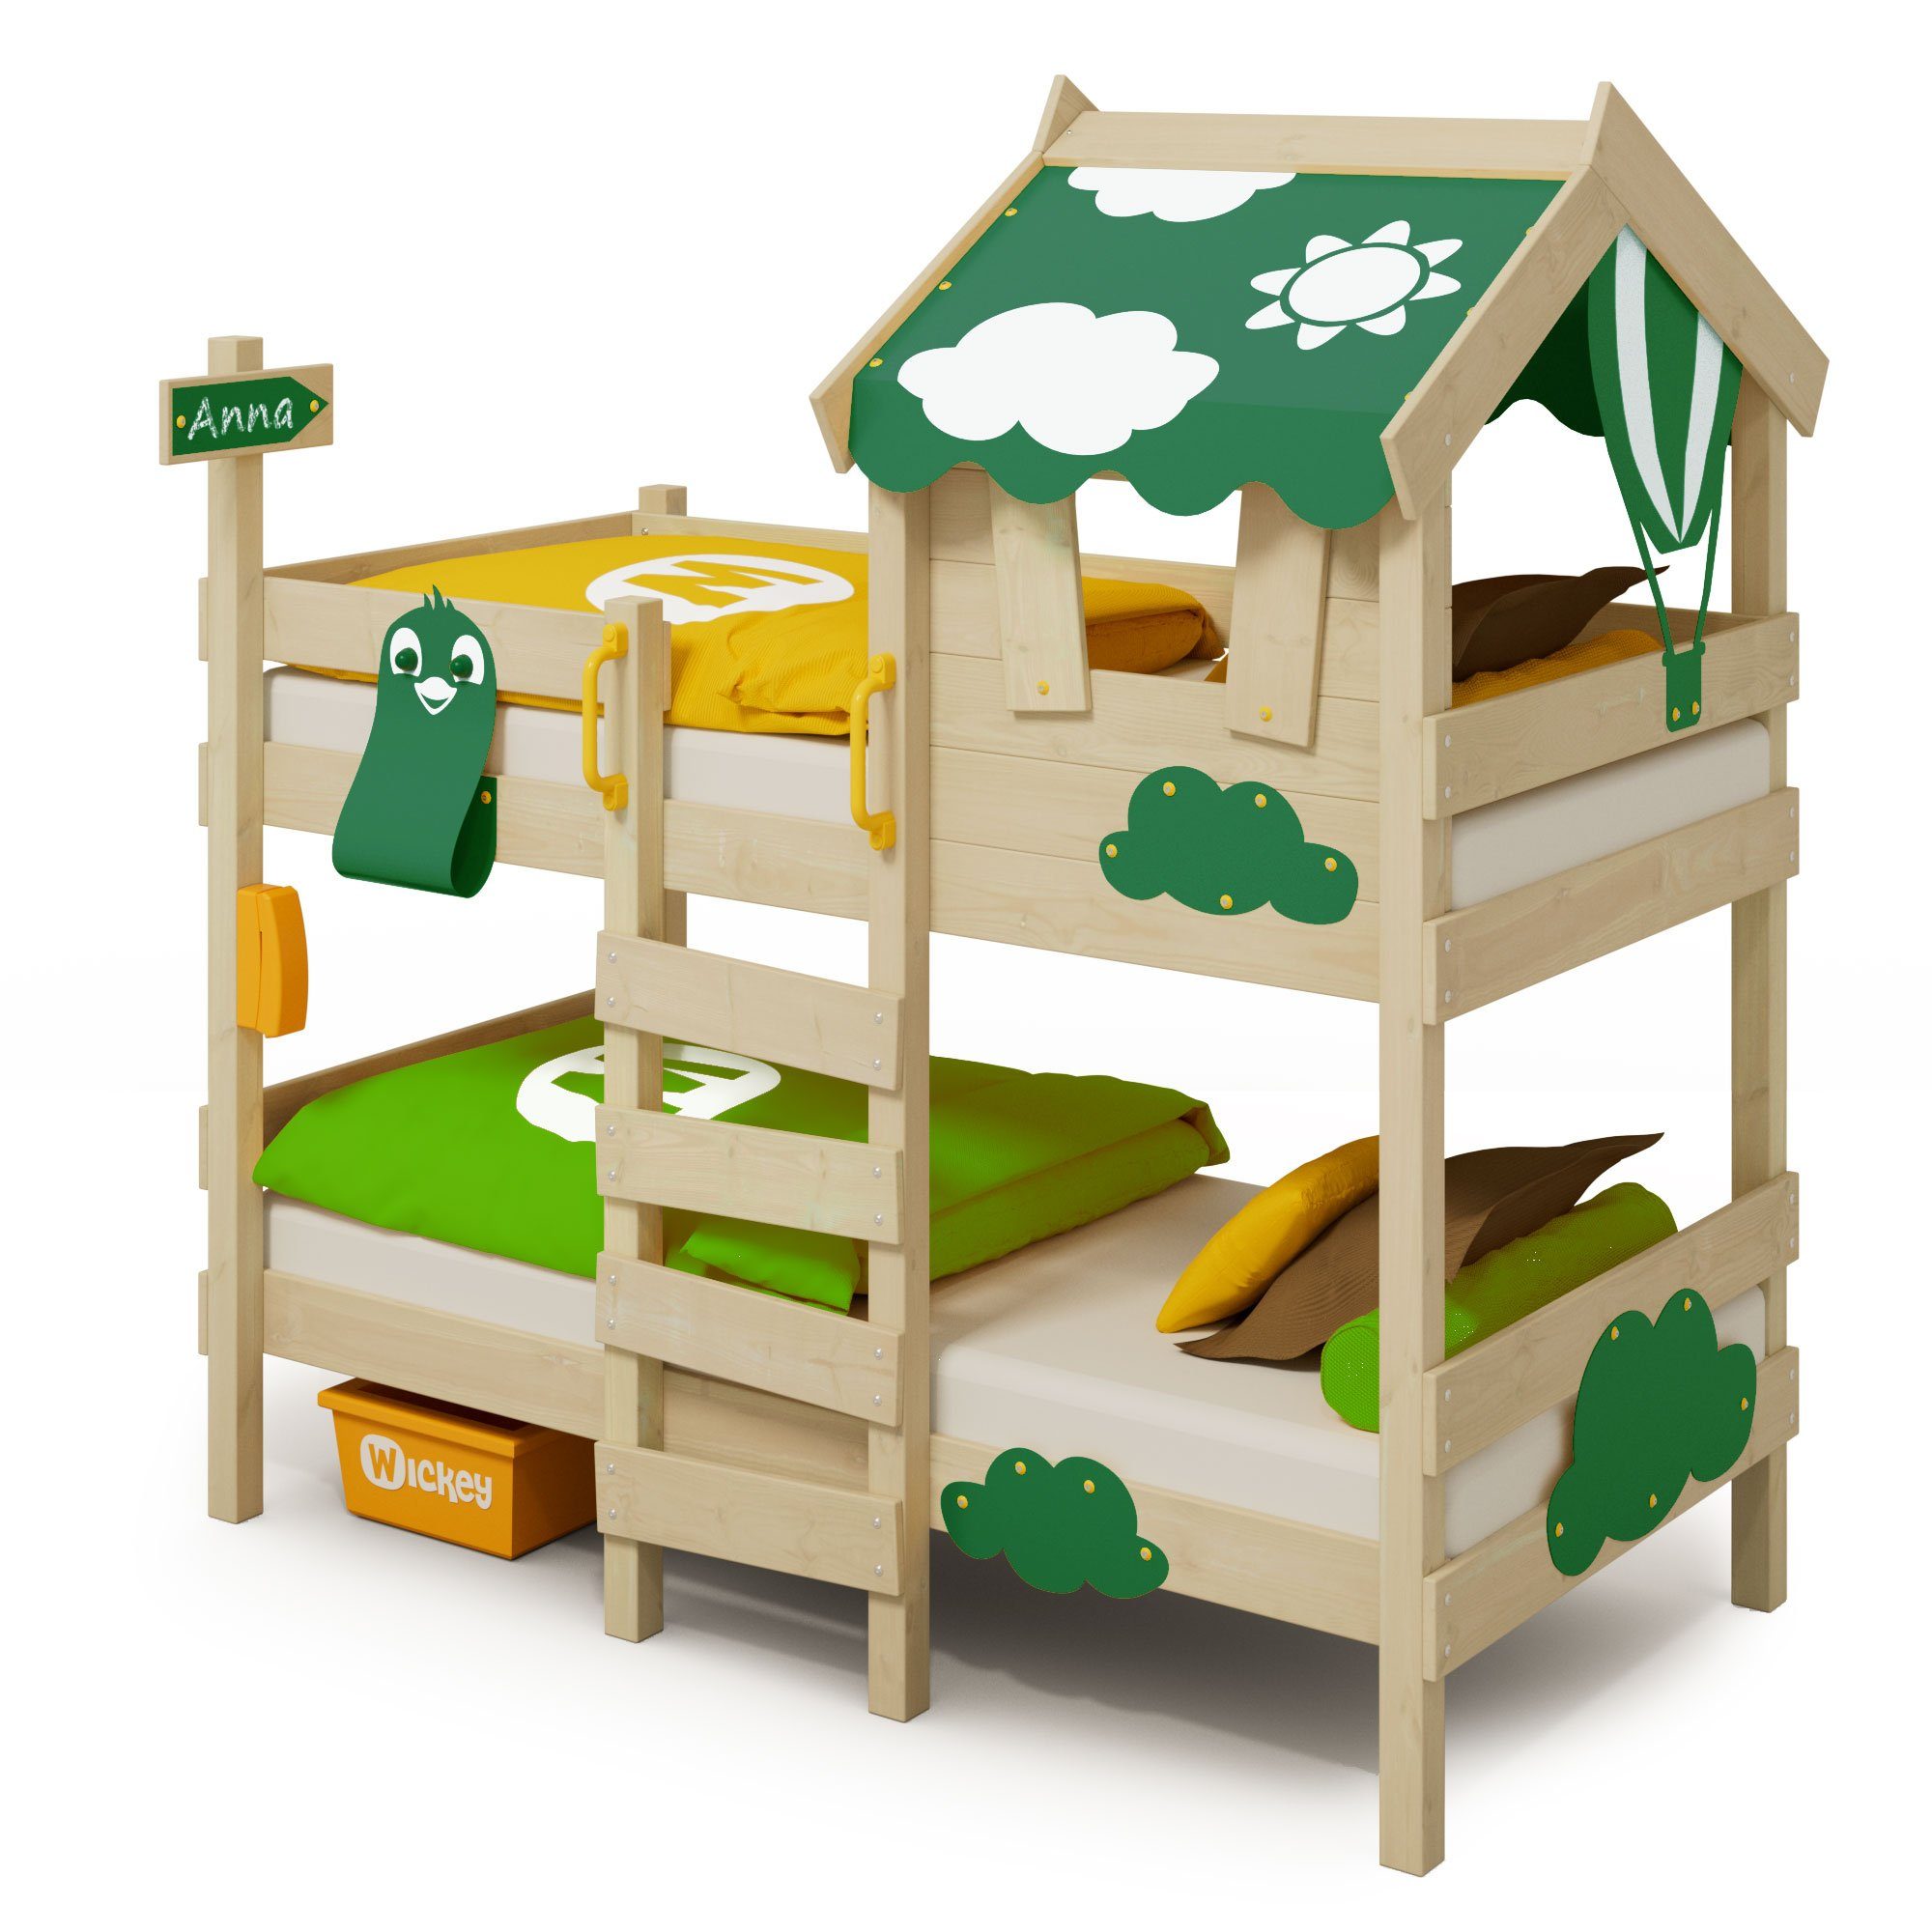 Wickey Kinderbett Crazy Daisy - Hochbett, Spielbett 90 x 200 cm (Holzpaket aus Pfosten und Brettern, Etagenbett mit Kletterleiter für Kinder), Massivholz grün